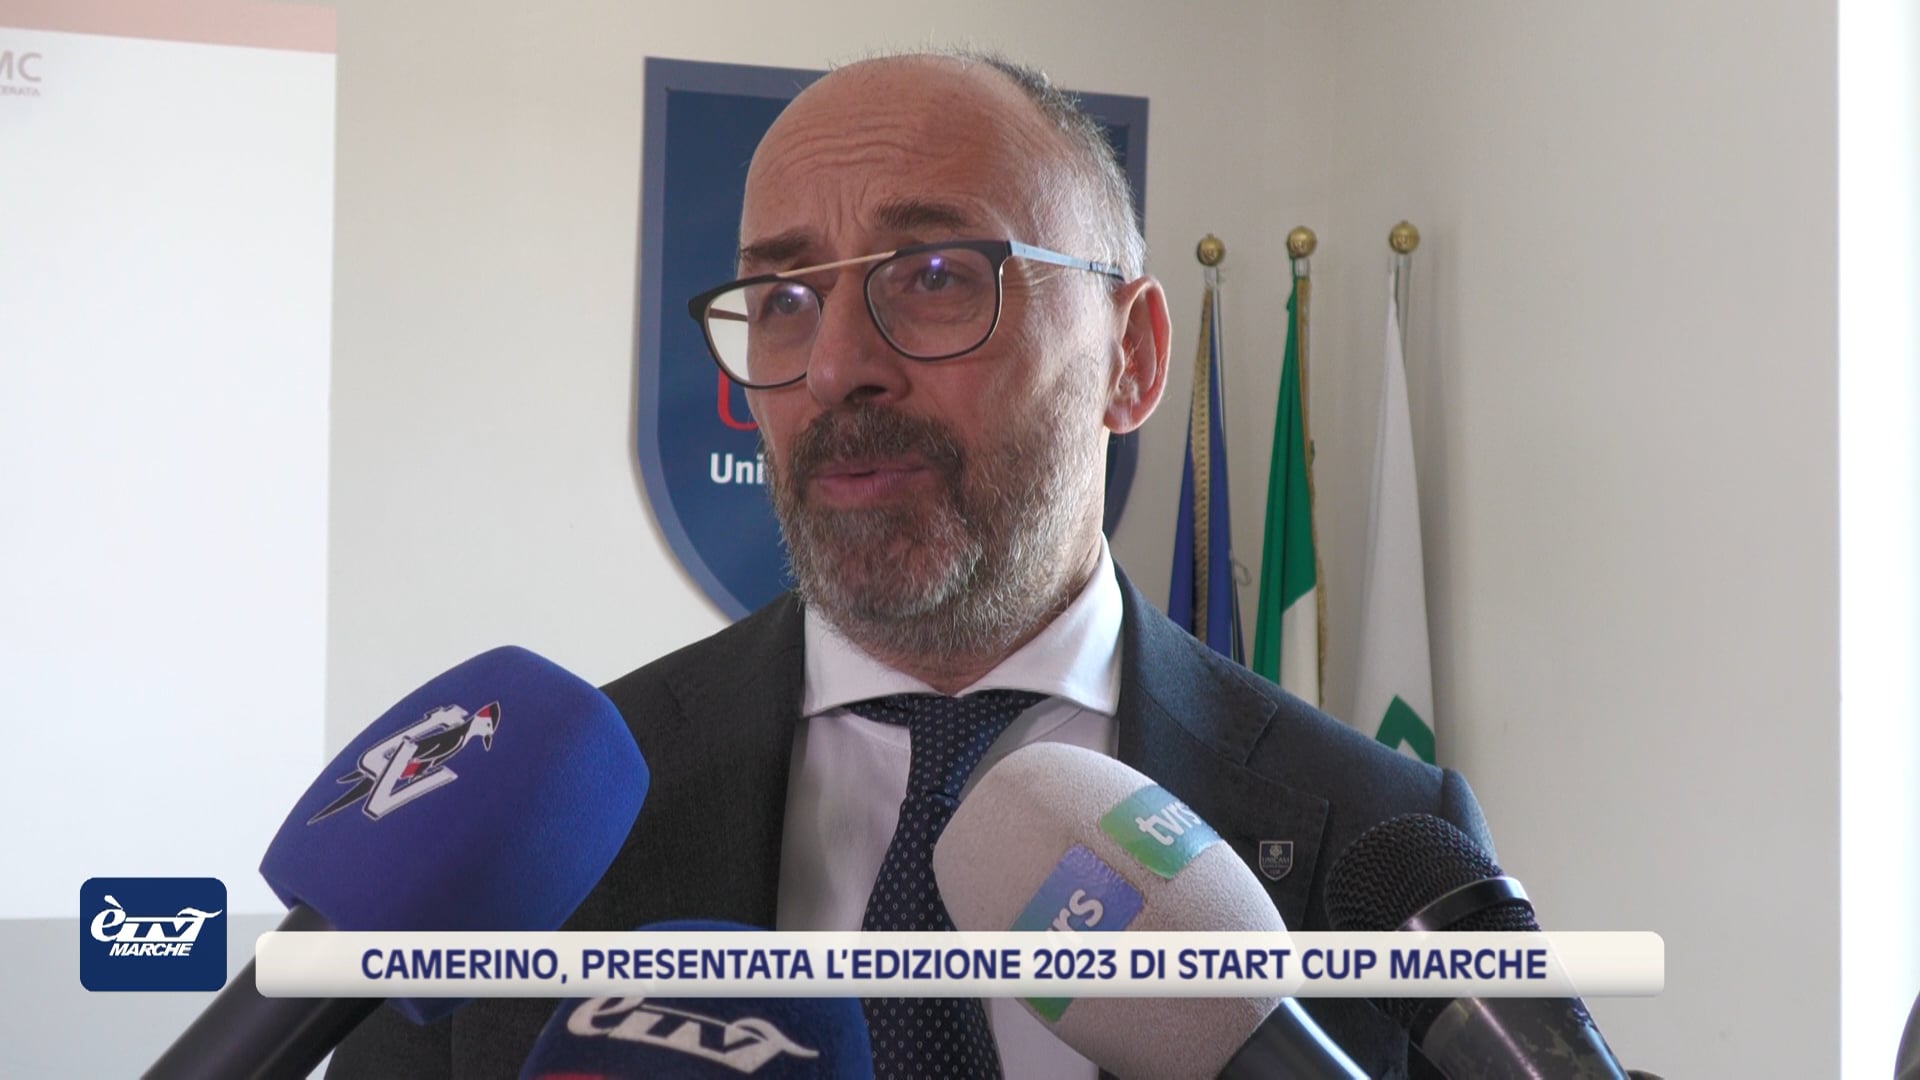 Camerino, presentata l’edizione 2023 di Start Cup Marche - VIDEO